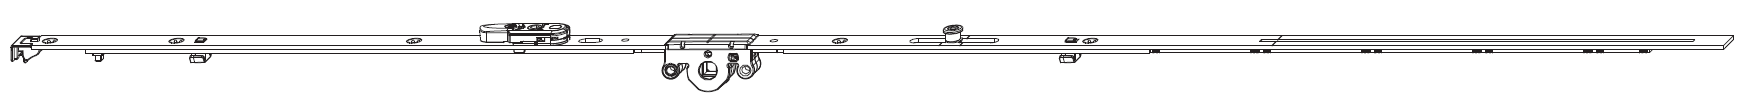 MAICO -  Cremonese MULTI-MATIC anta ribalta antieffrazione altezza maniglia fissa con piedino e dss per ribalta - gr / dim. 1090 - entrata 15 - alt. man. 400 - lbb/hbb 841 - 1090